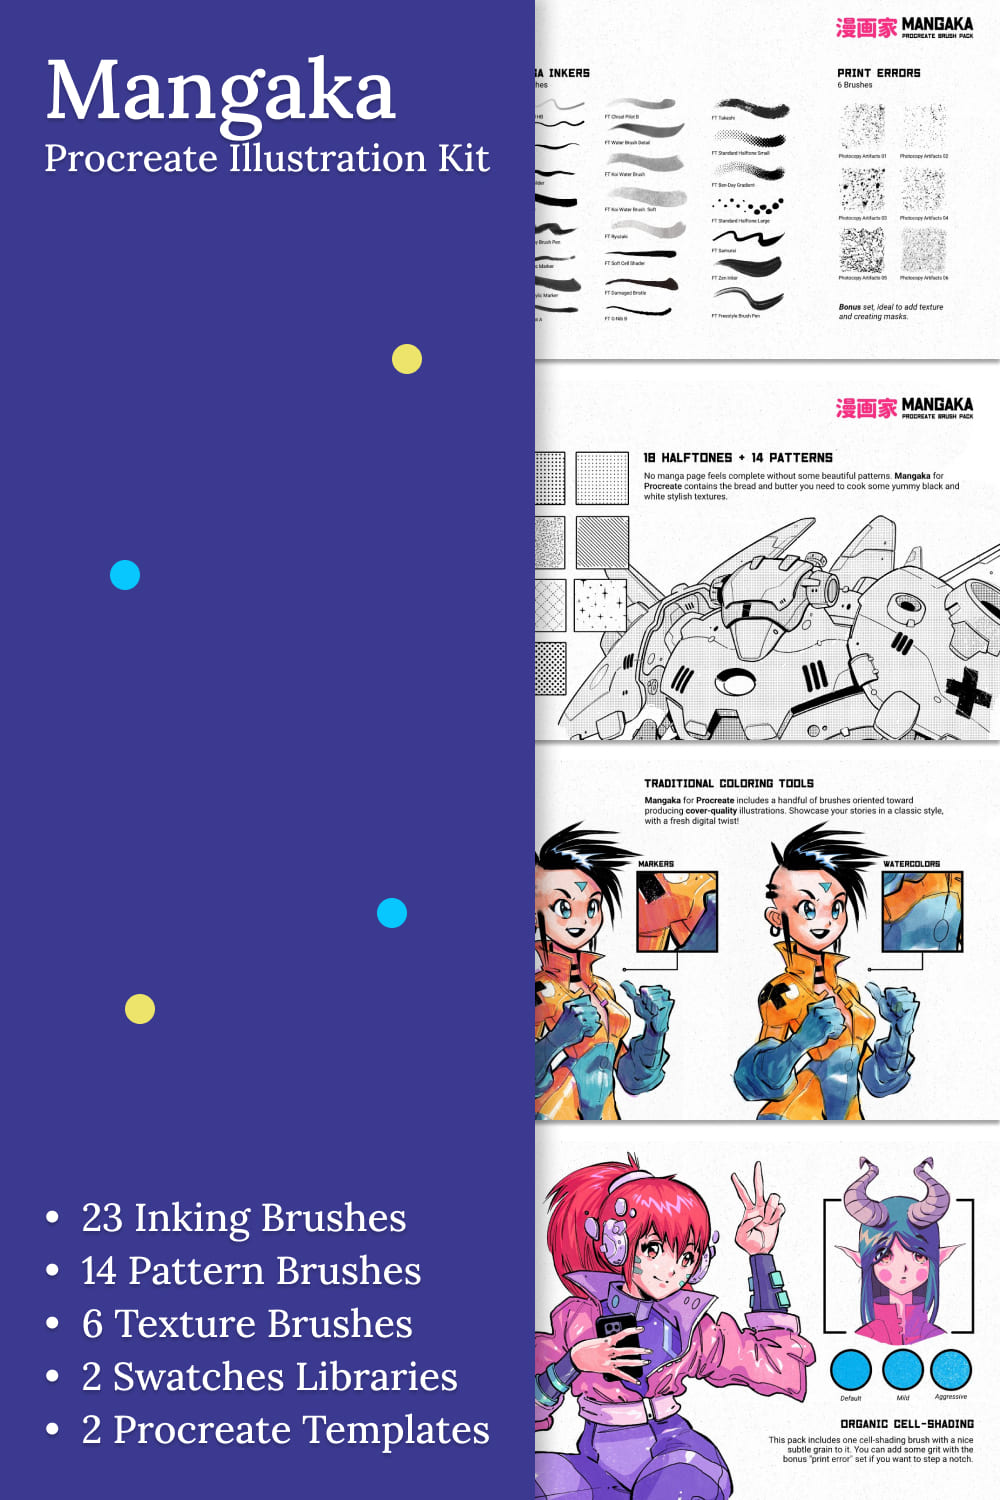 mangaka procreate illustration kit 02 862